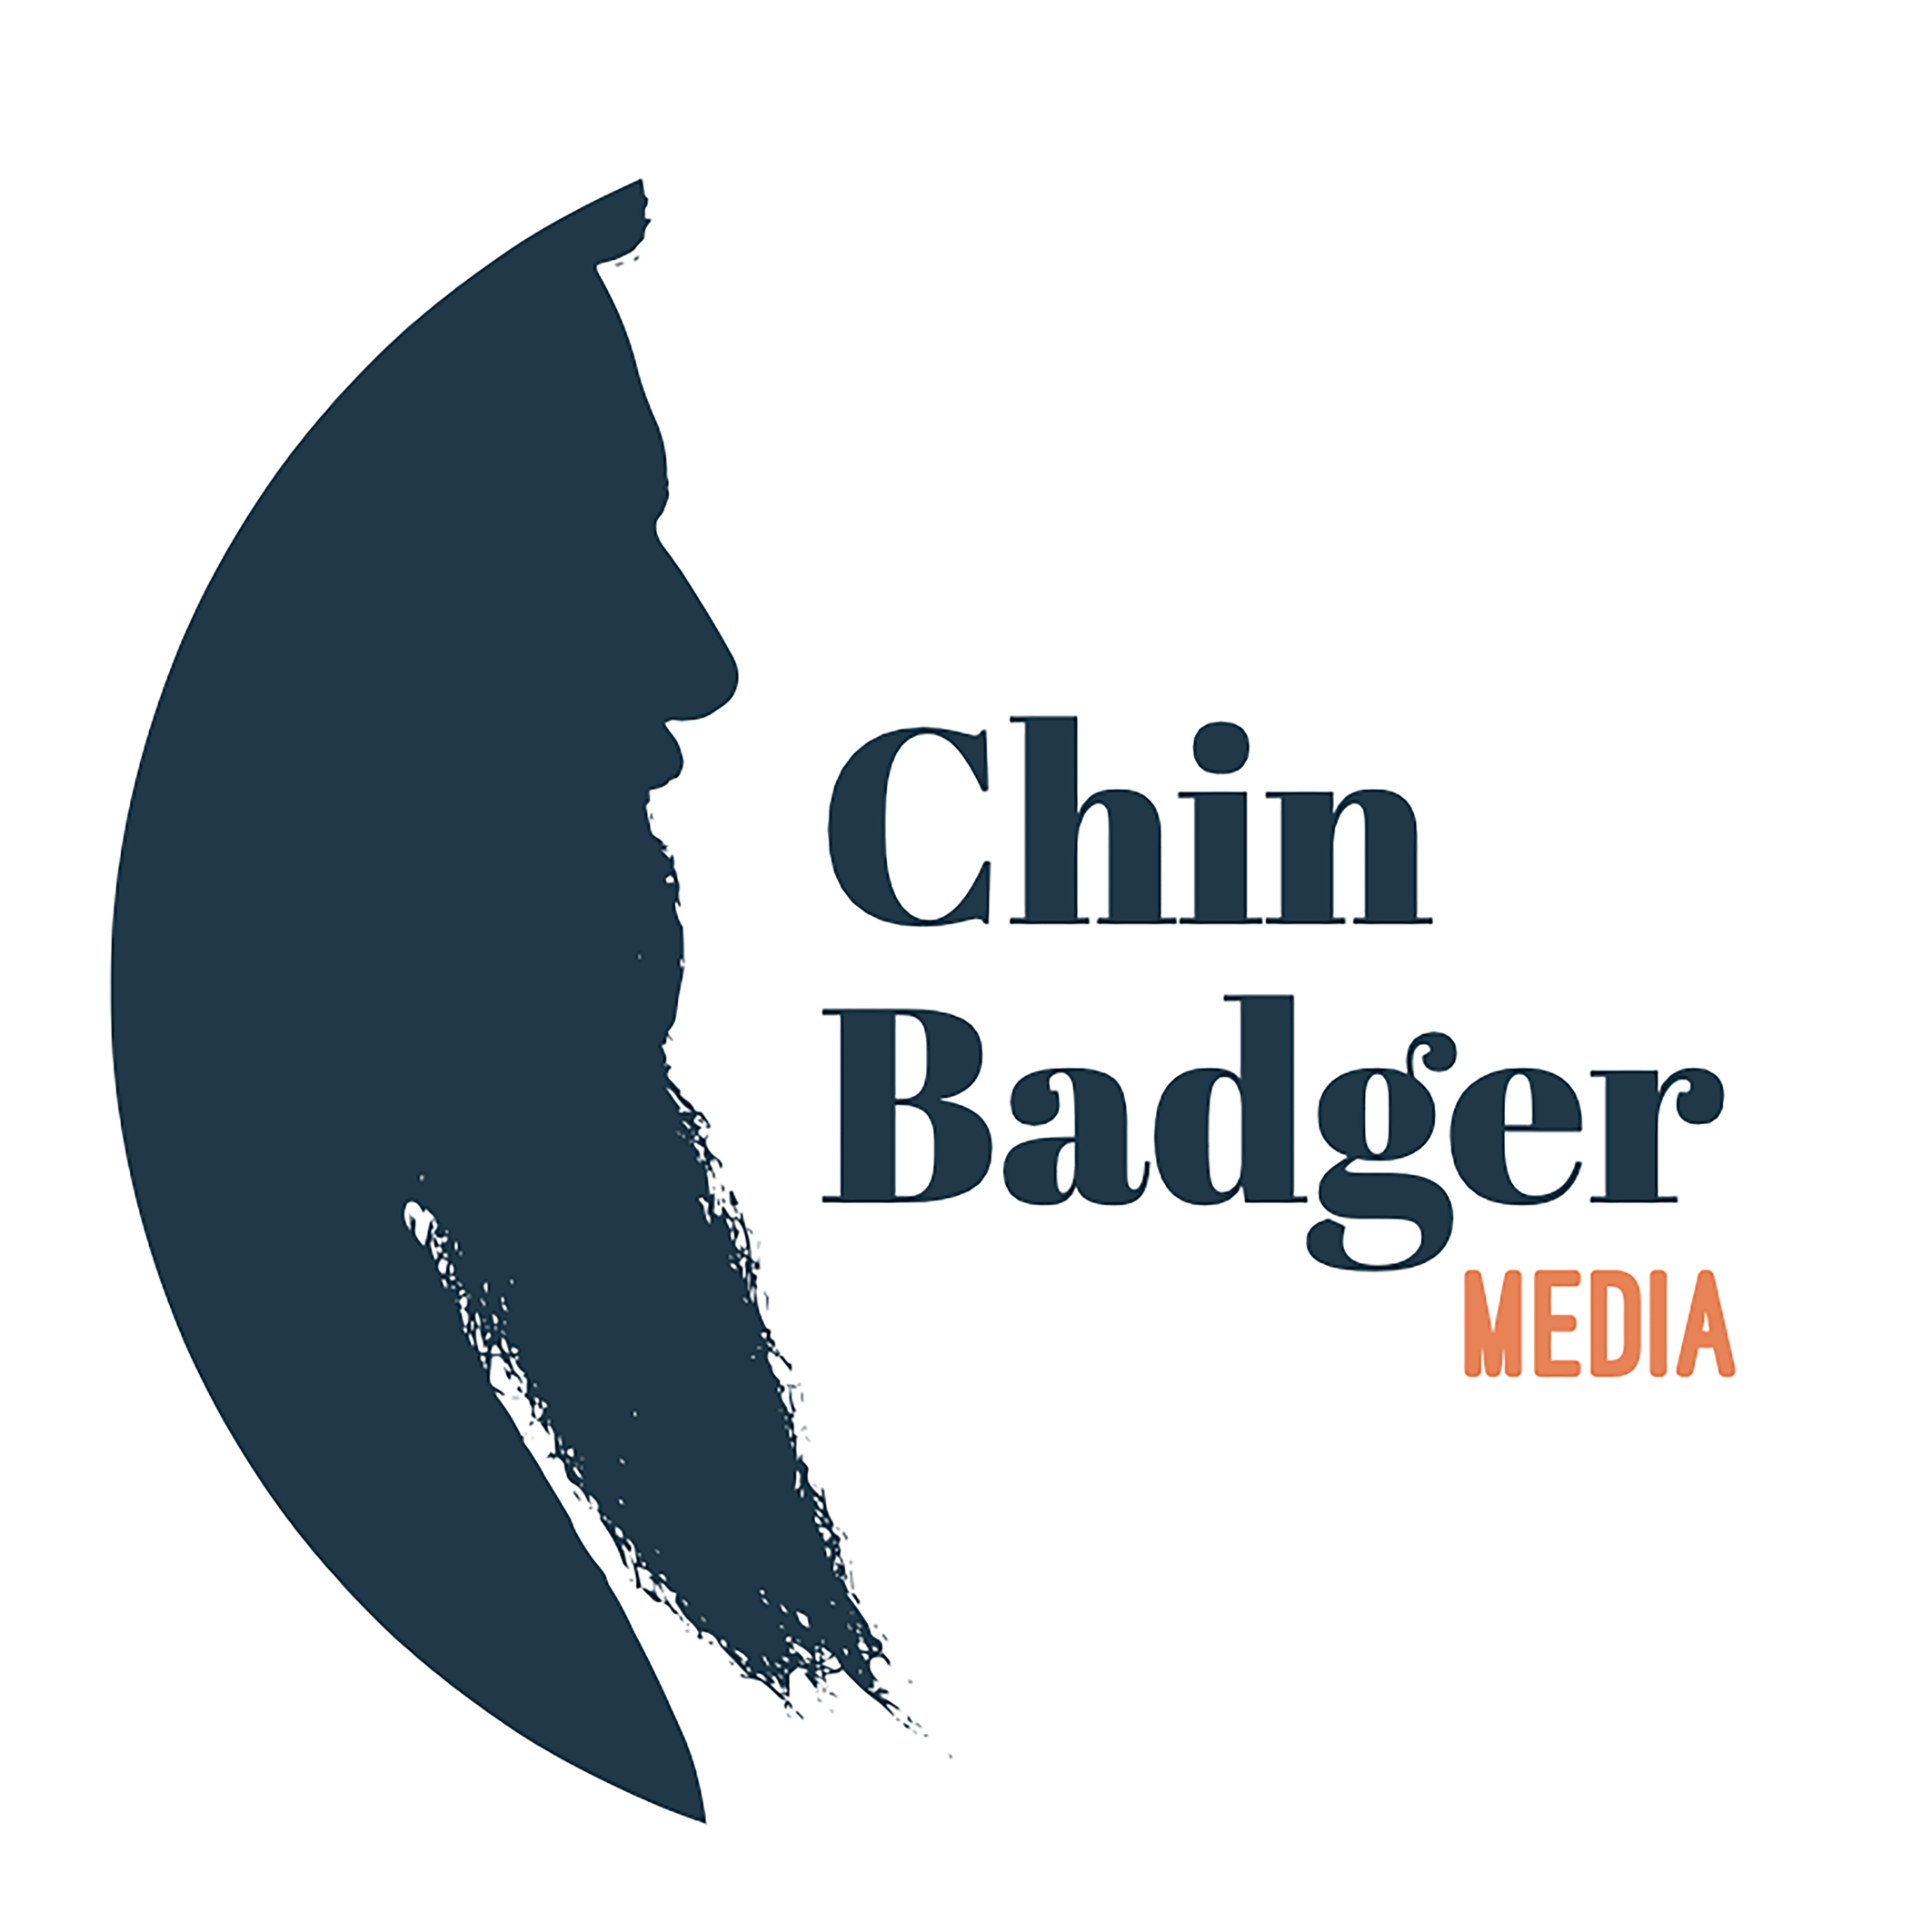 Company logo image - Chin Badger Media